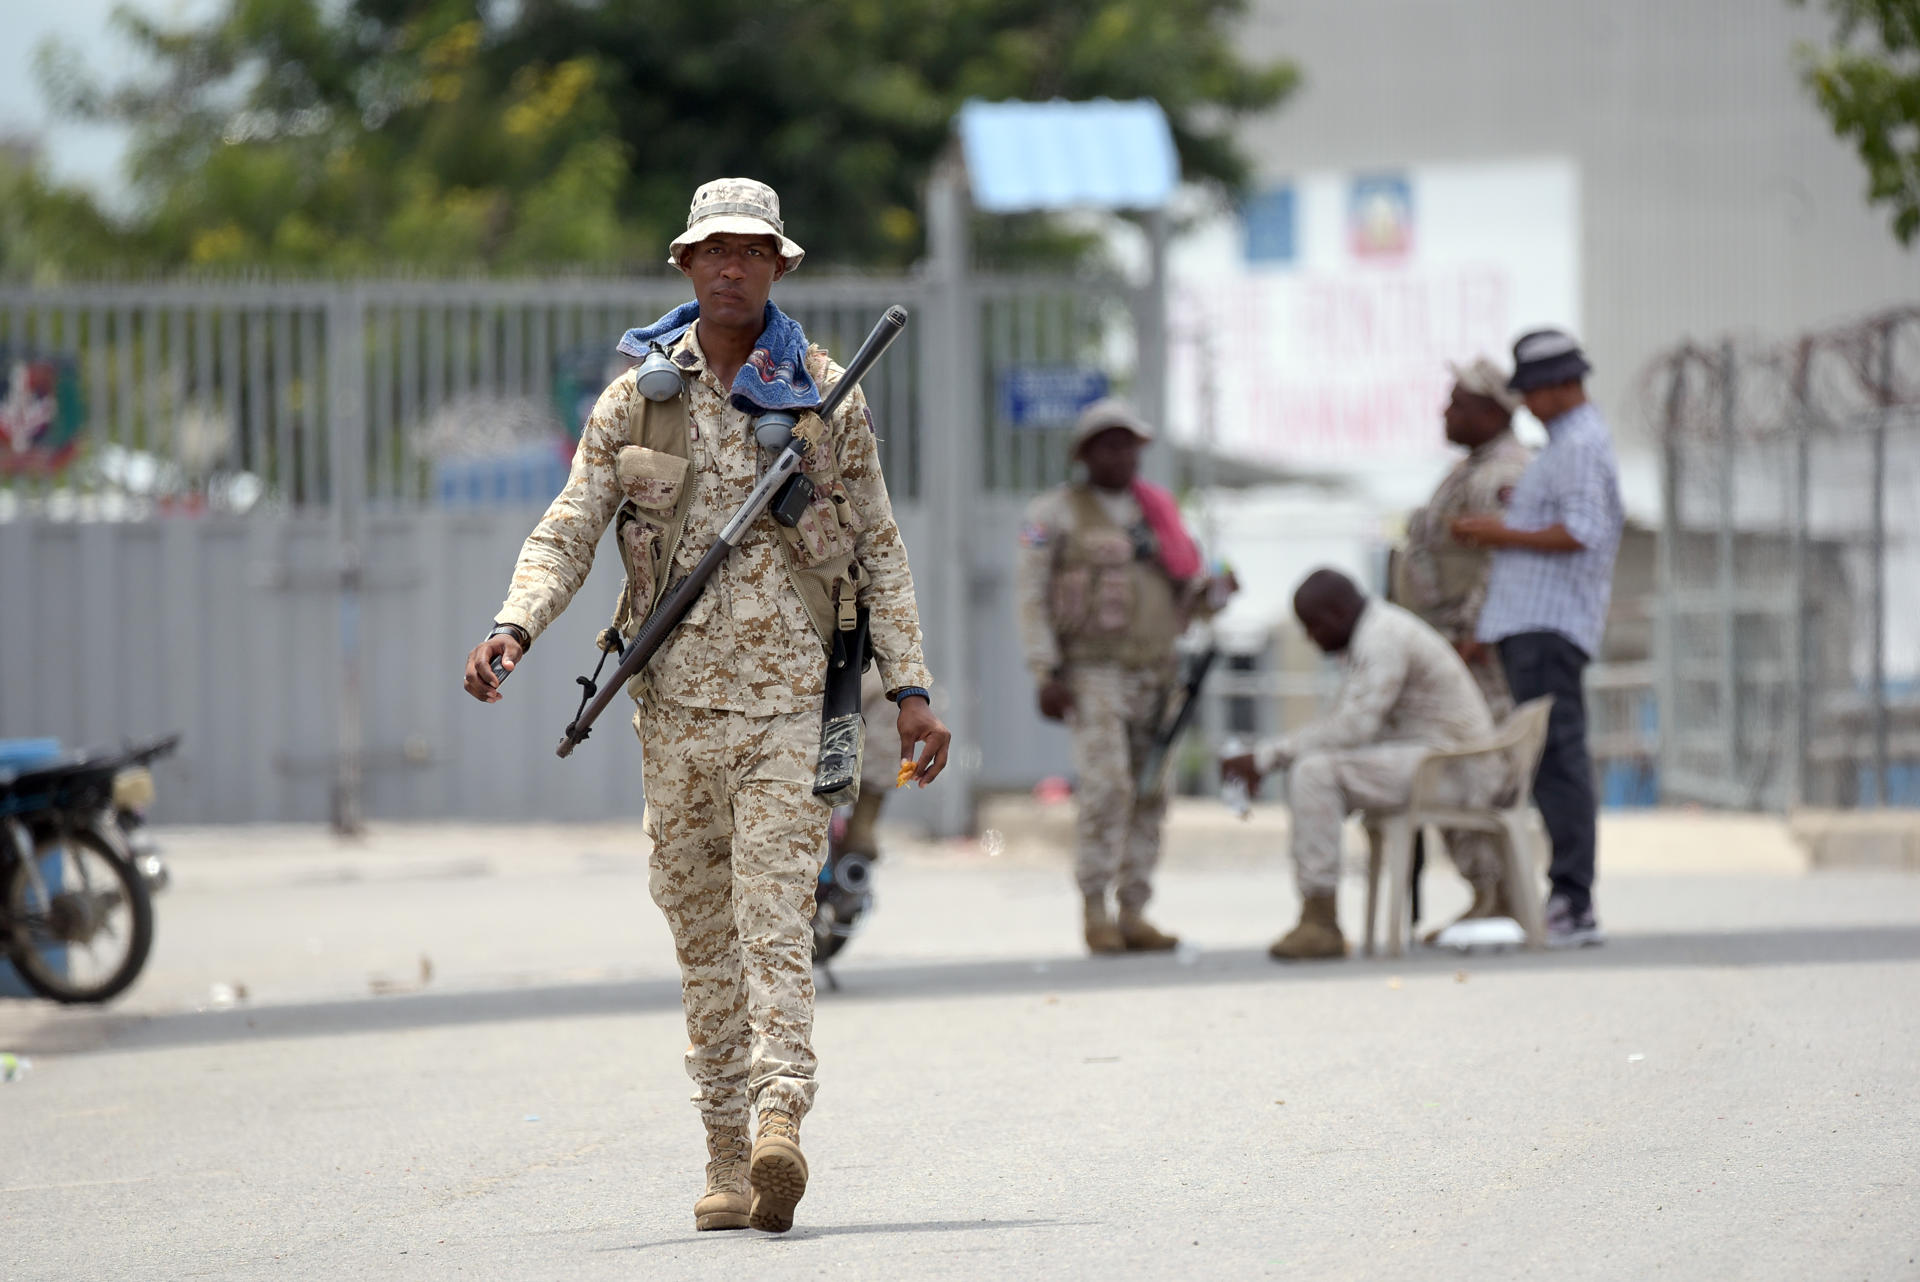 República Dominicana anula la emisión de visas a haitianos y mantiene el cierre fronterizo